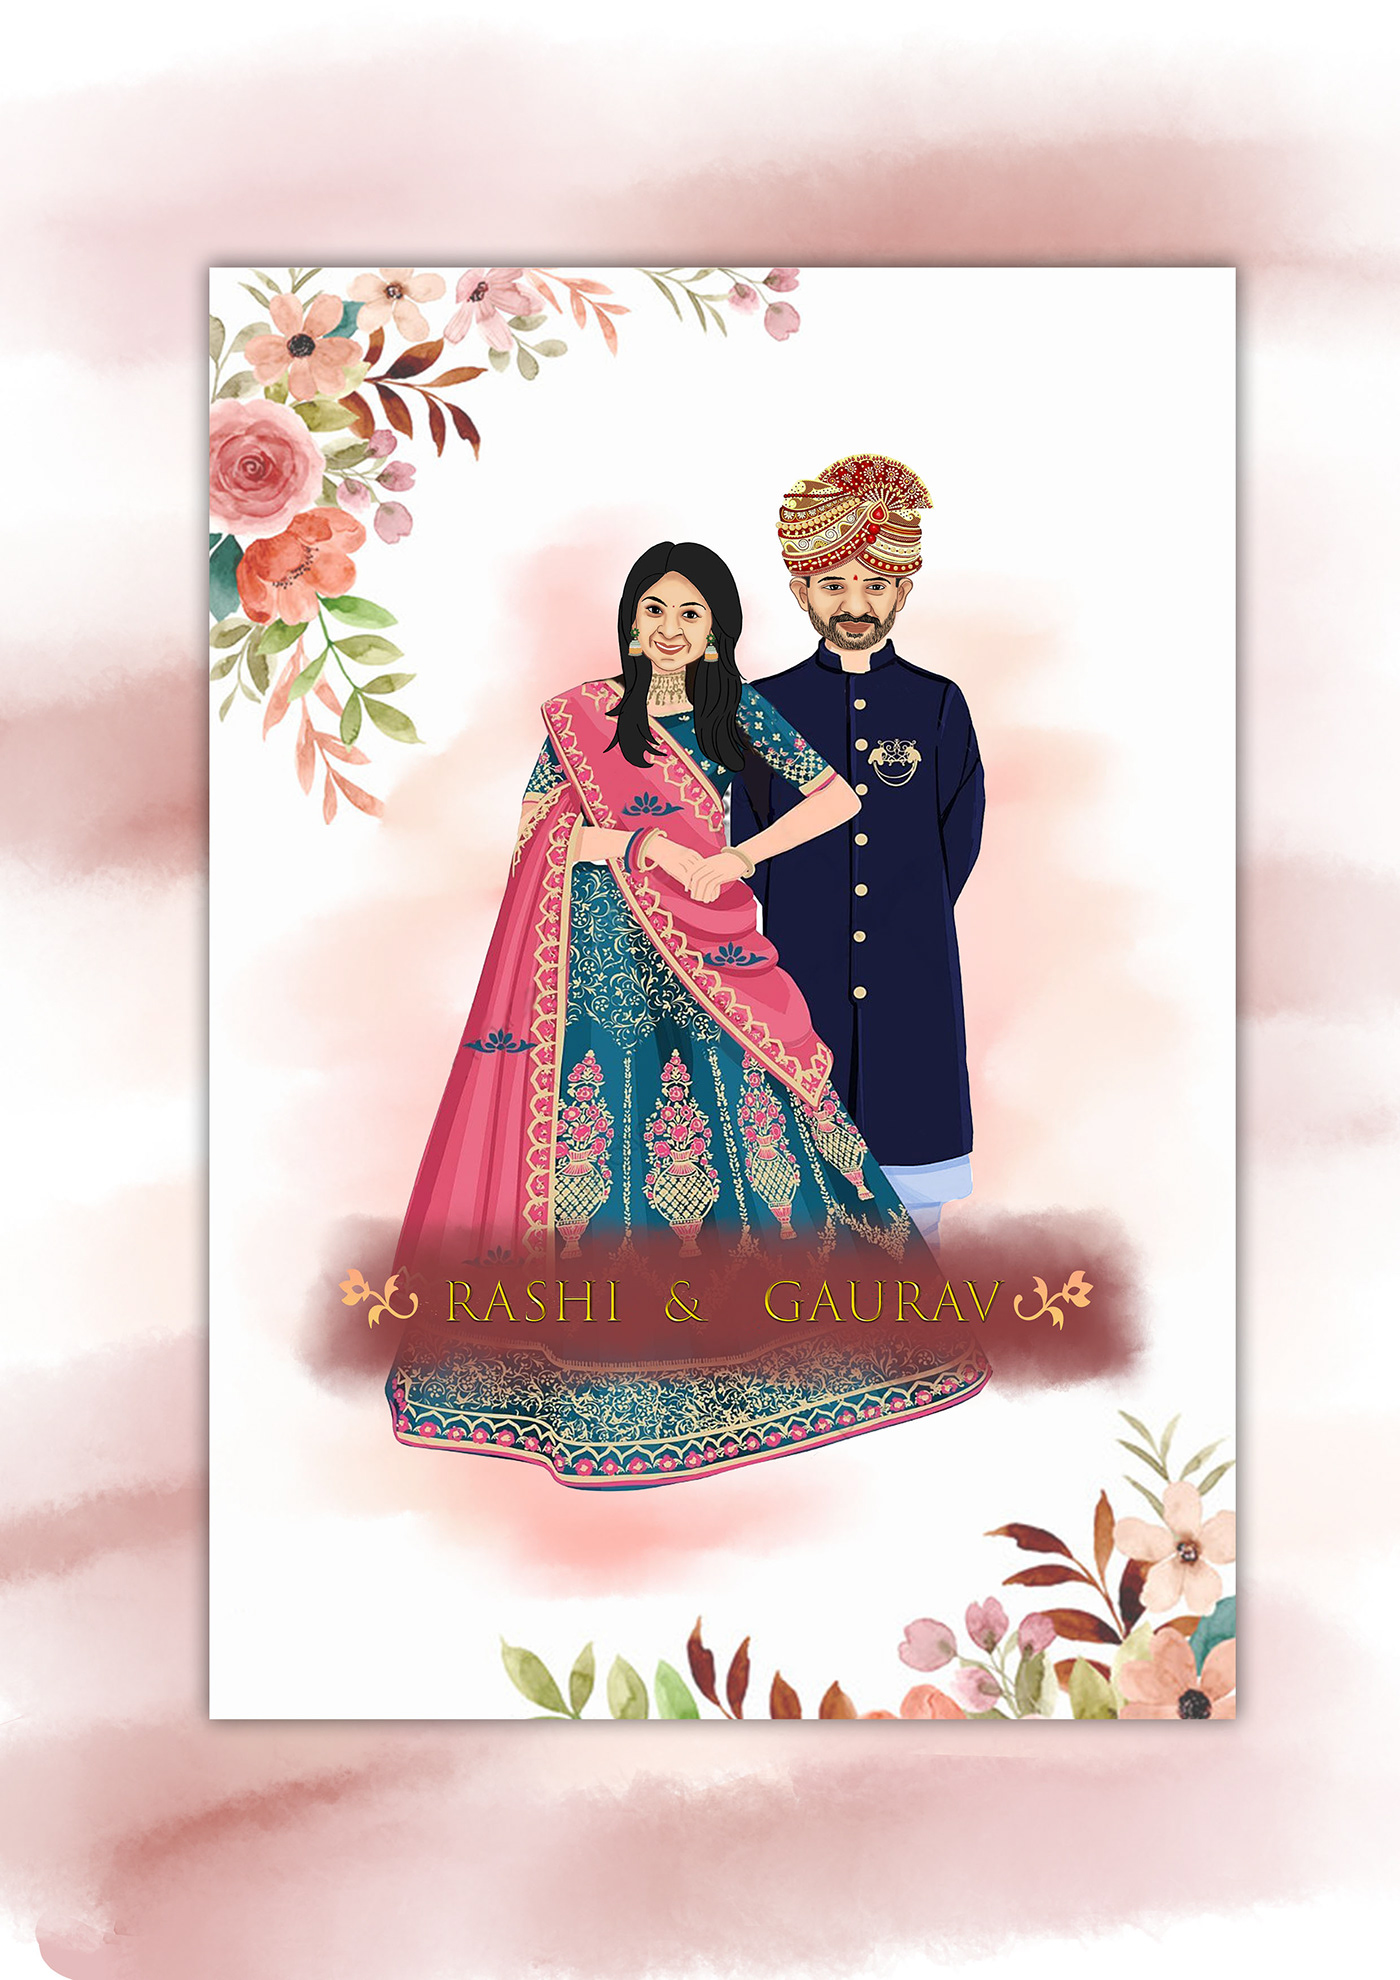 wedding invitation indian wedding save the date floral watercolor couplecaricature E Invitation video invitation